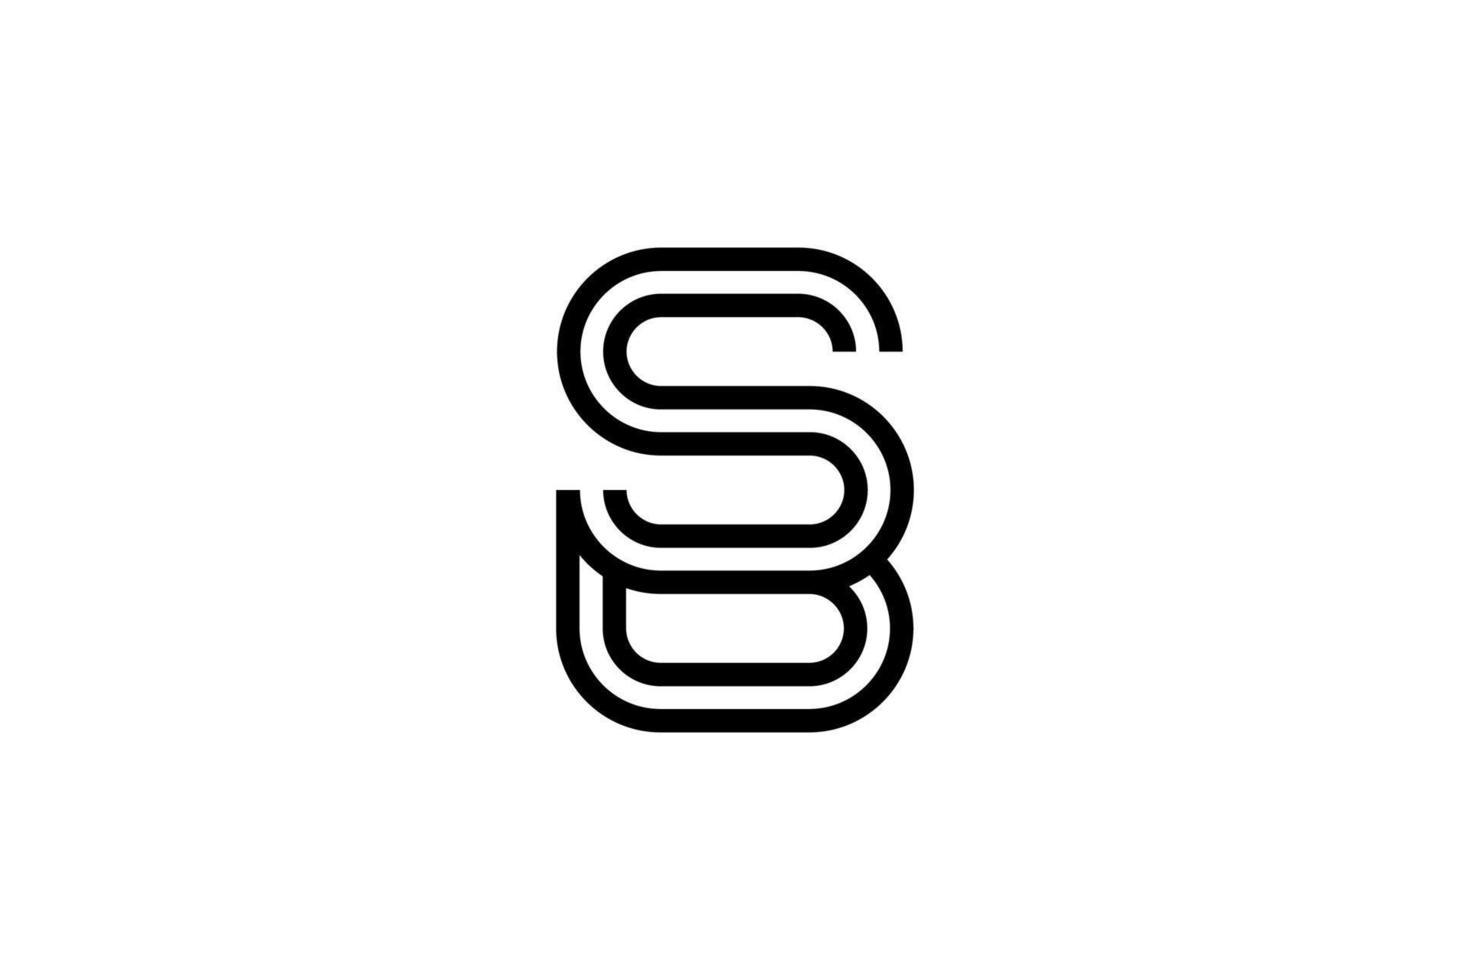 zwart sb eerste logotype concept vector